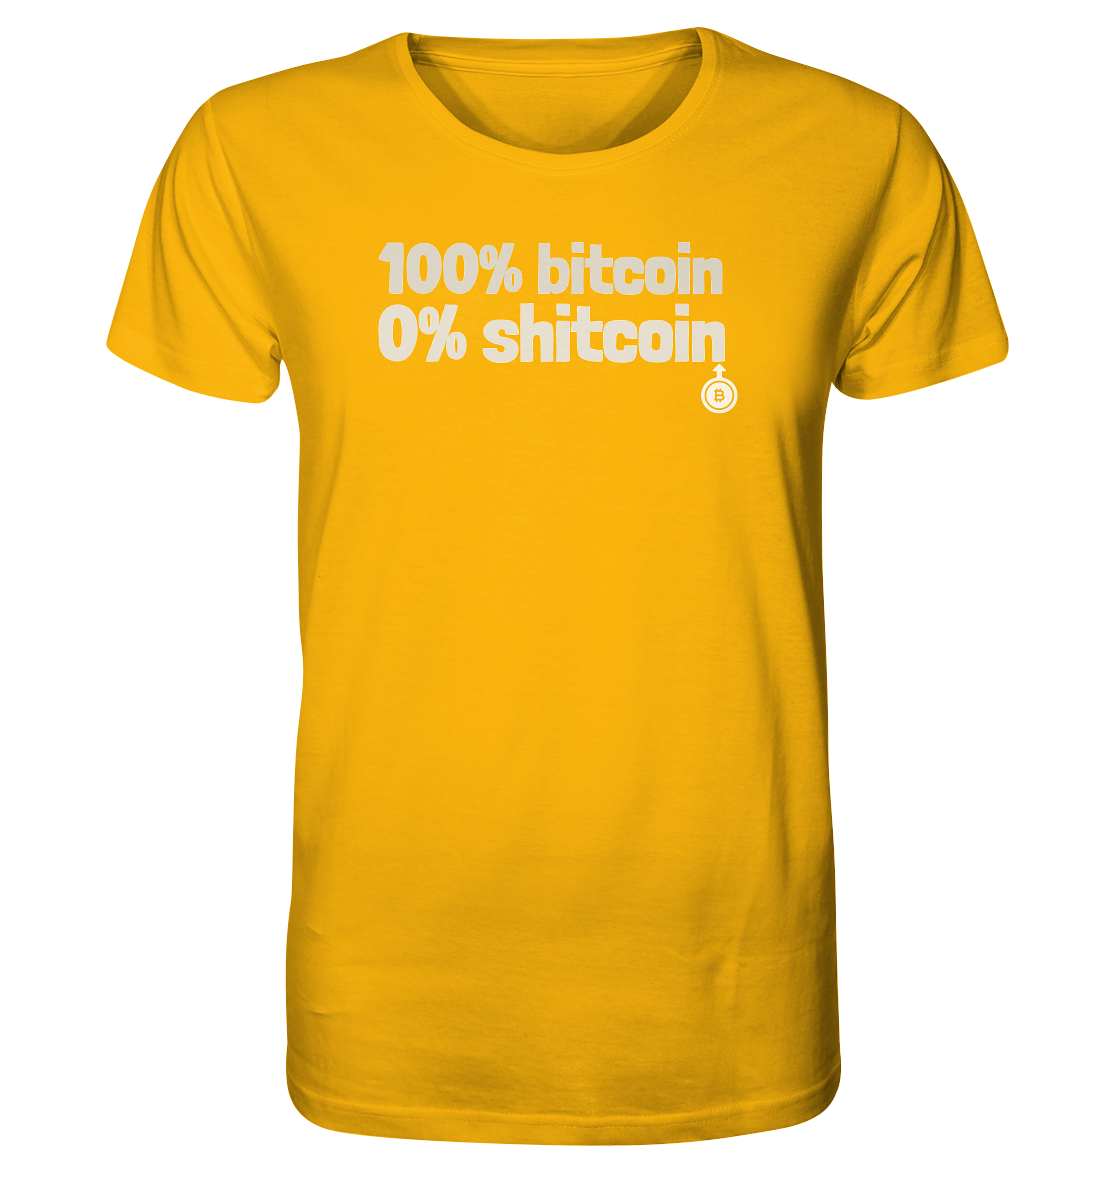 100% bitcoin - 0% shitcoin  - Organic Shirt